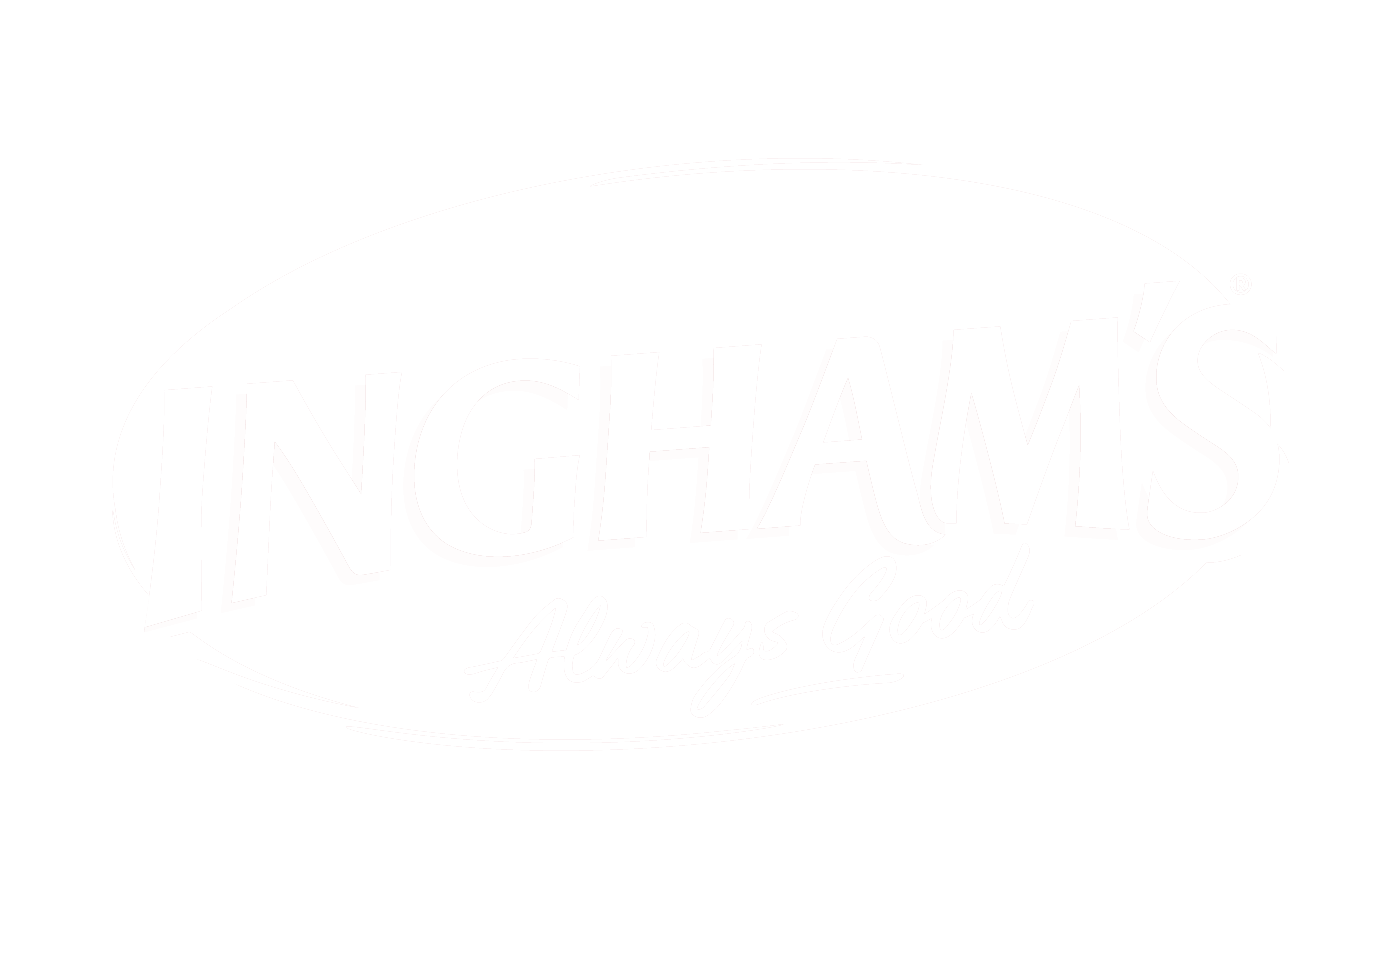 Ingham’s